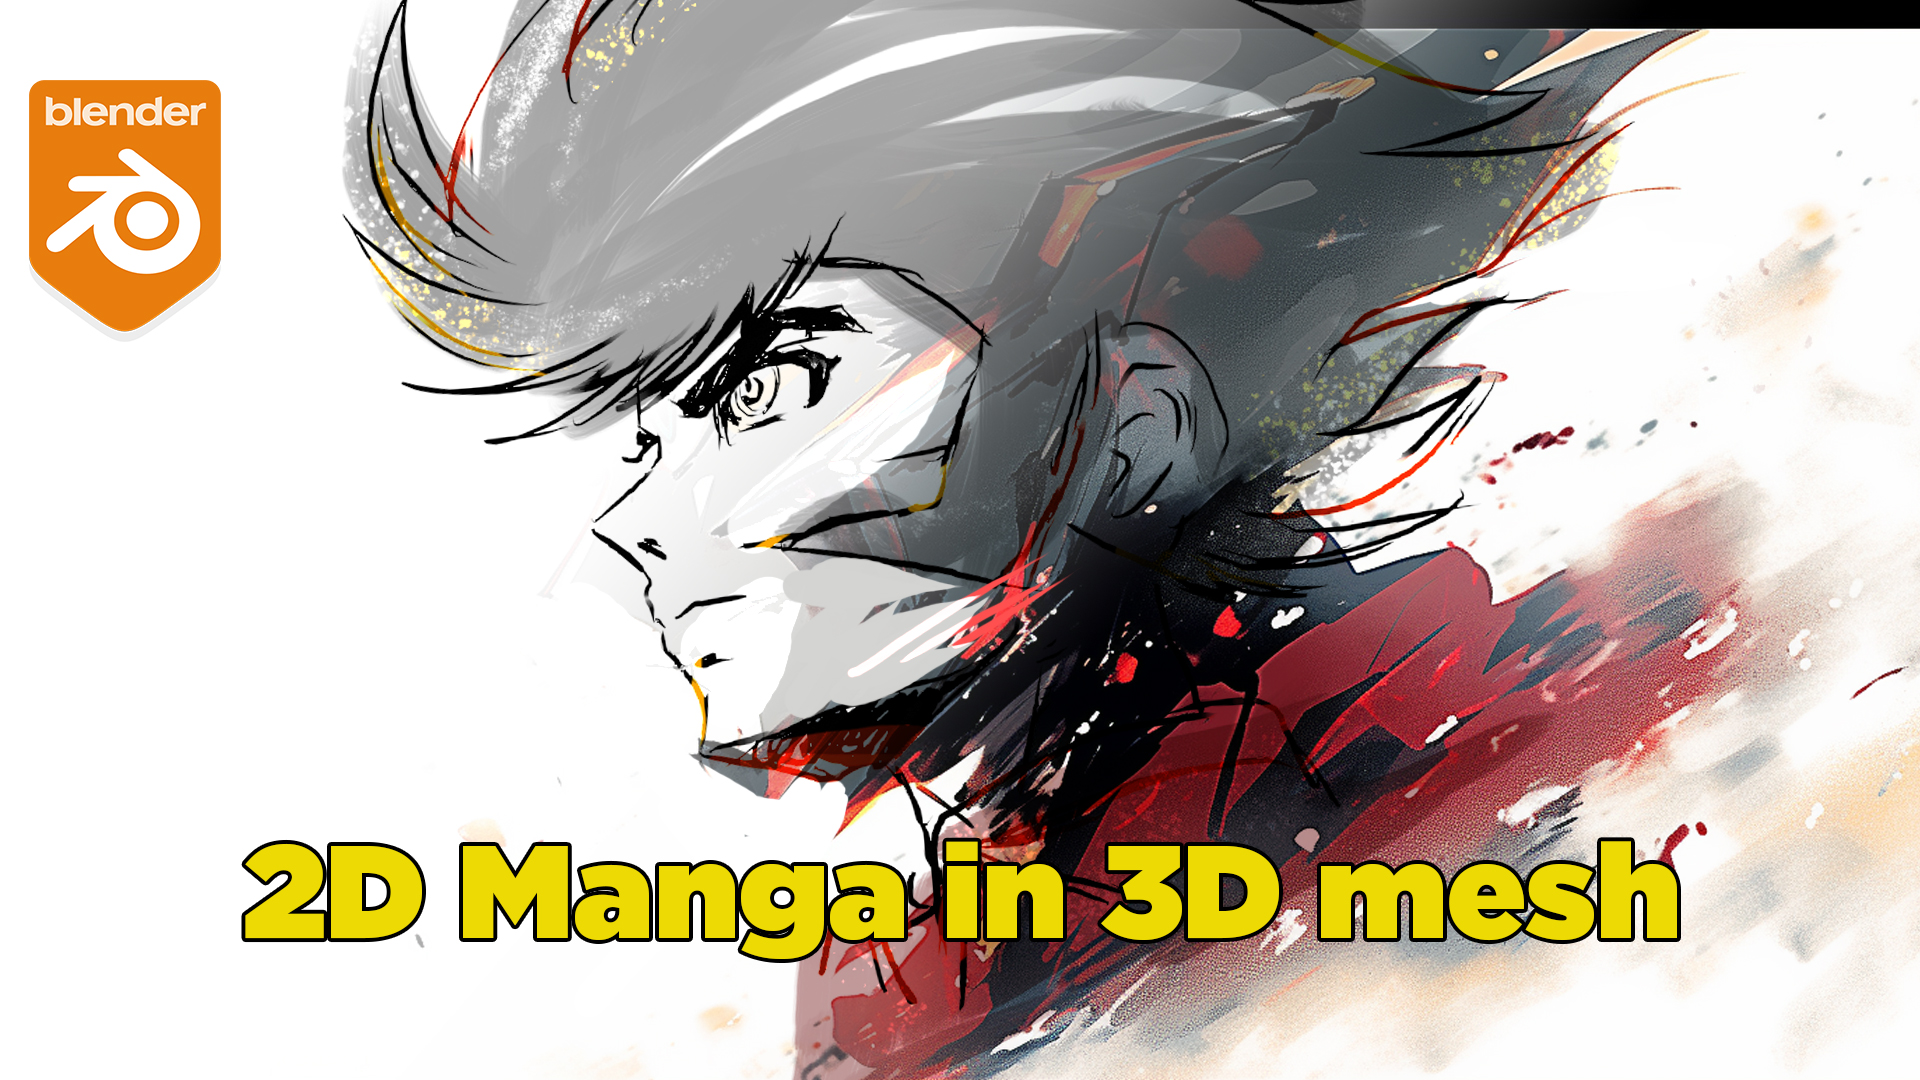 2D manga in 3D mesh